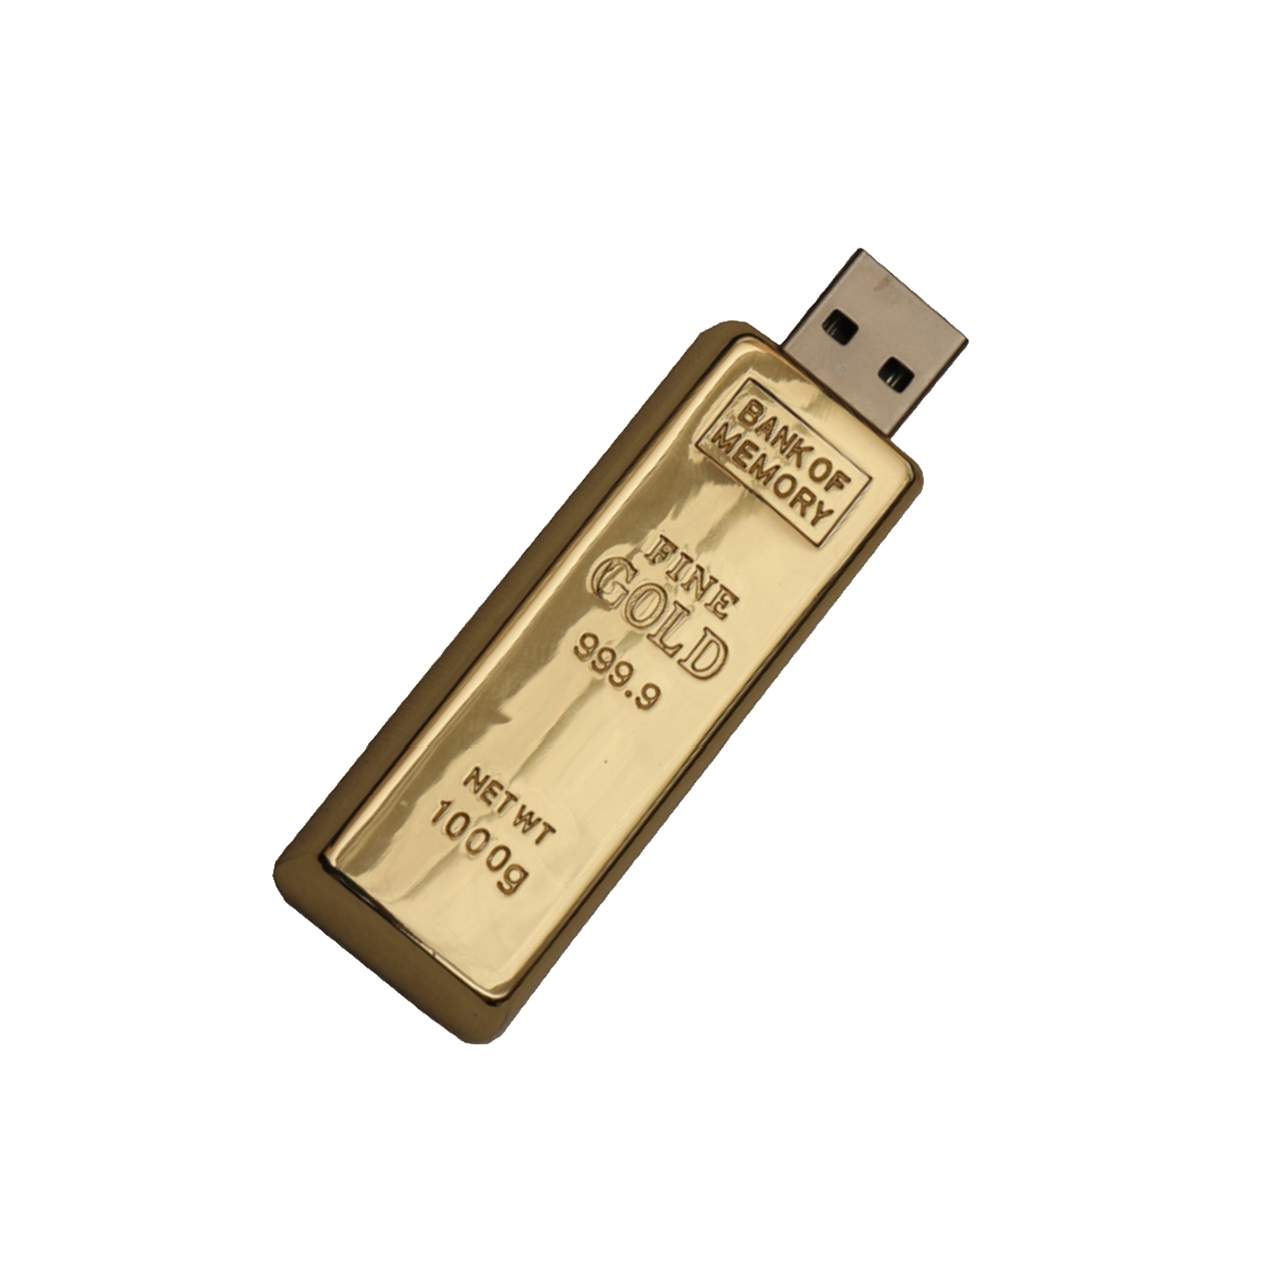 فلش مموری فلزی دایا دیتا طرح Gold Ingot مدل ME1001-USB3 ظرفیت 64 گیگابایت